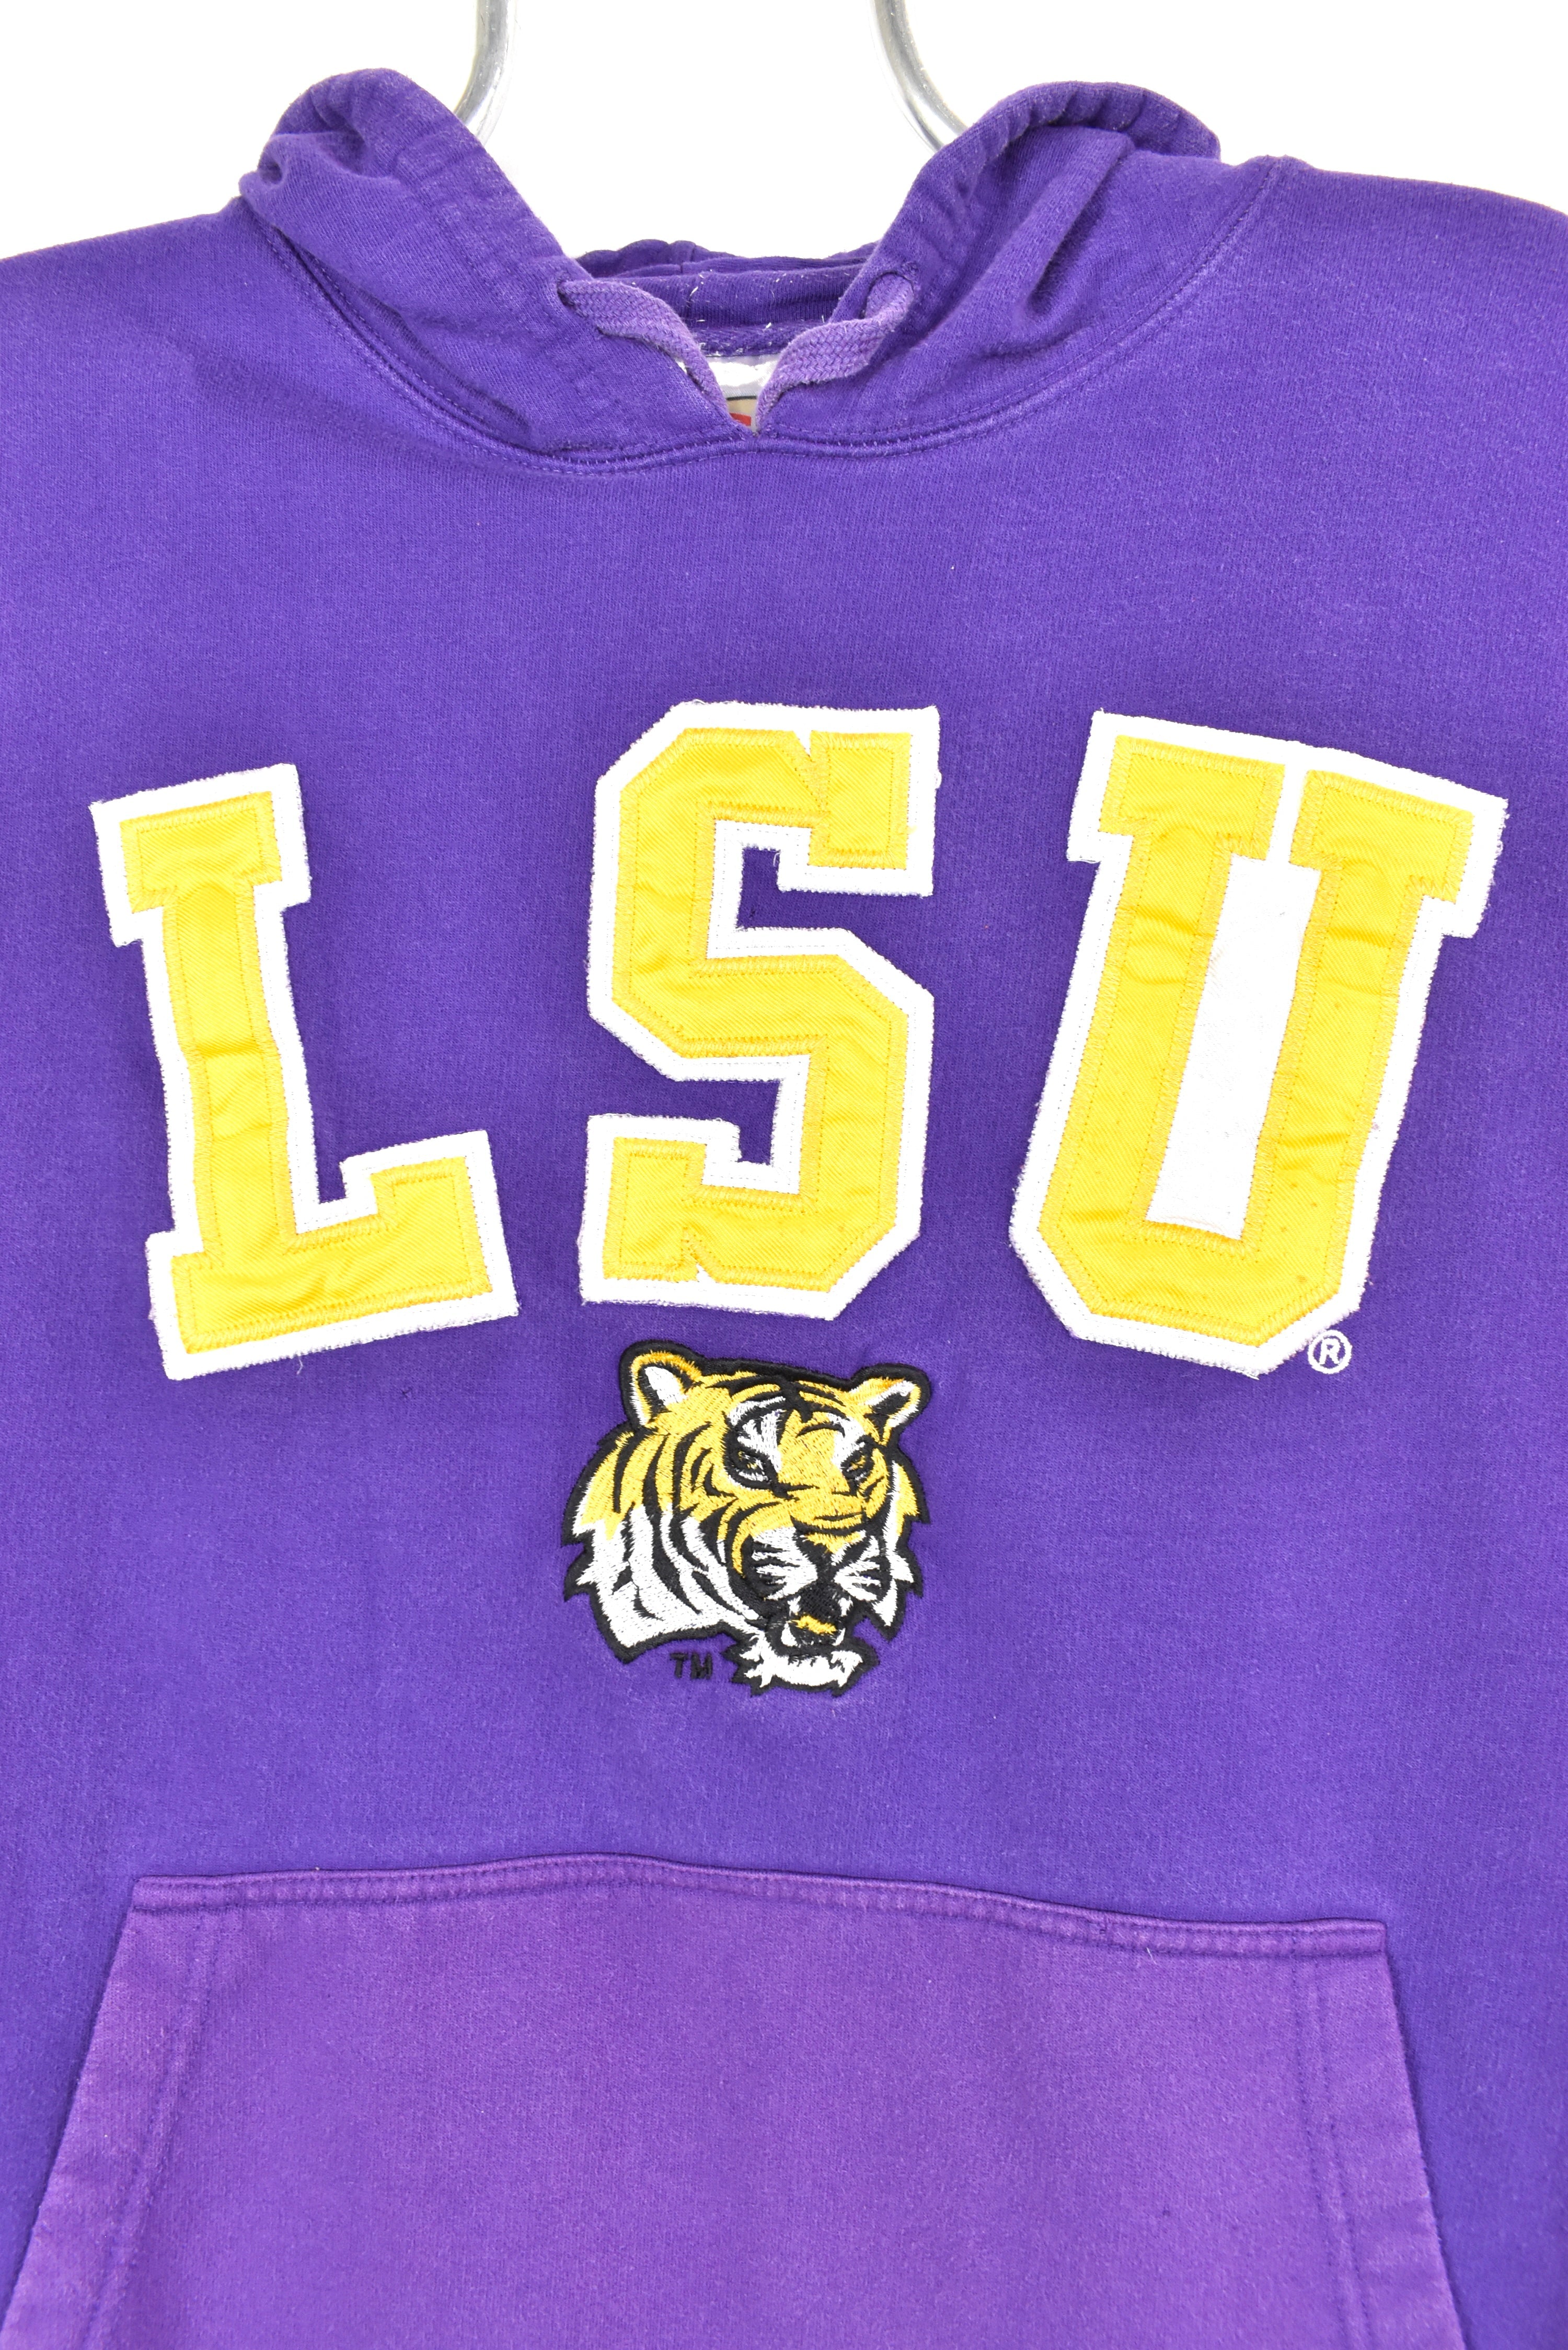 Vintage Louisiana State University hoodie, purple embroidered sweatshirt - AU Medium COLLEGE